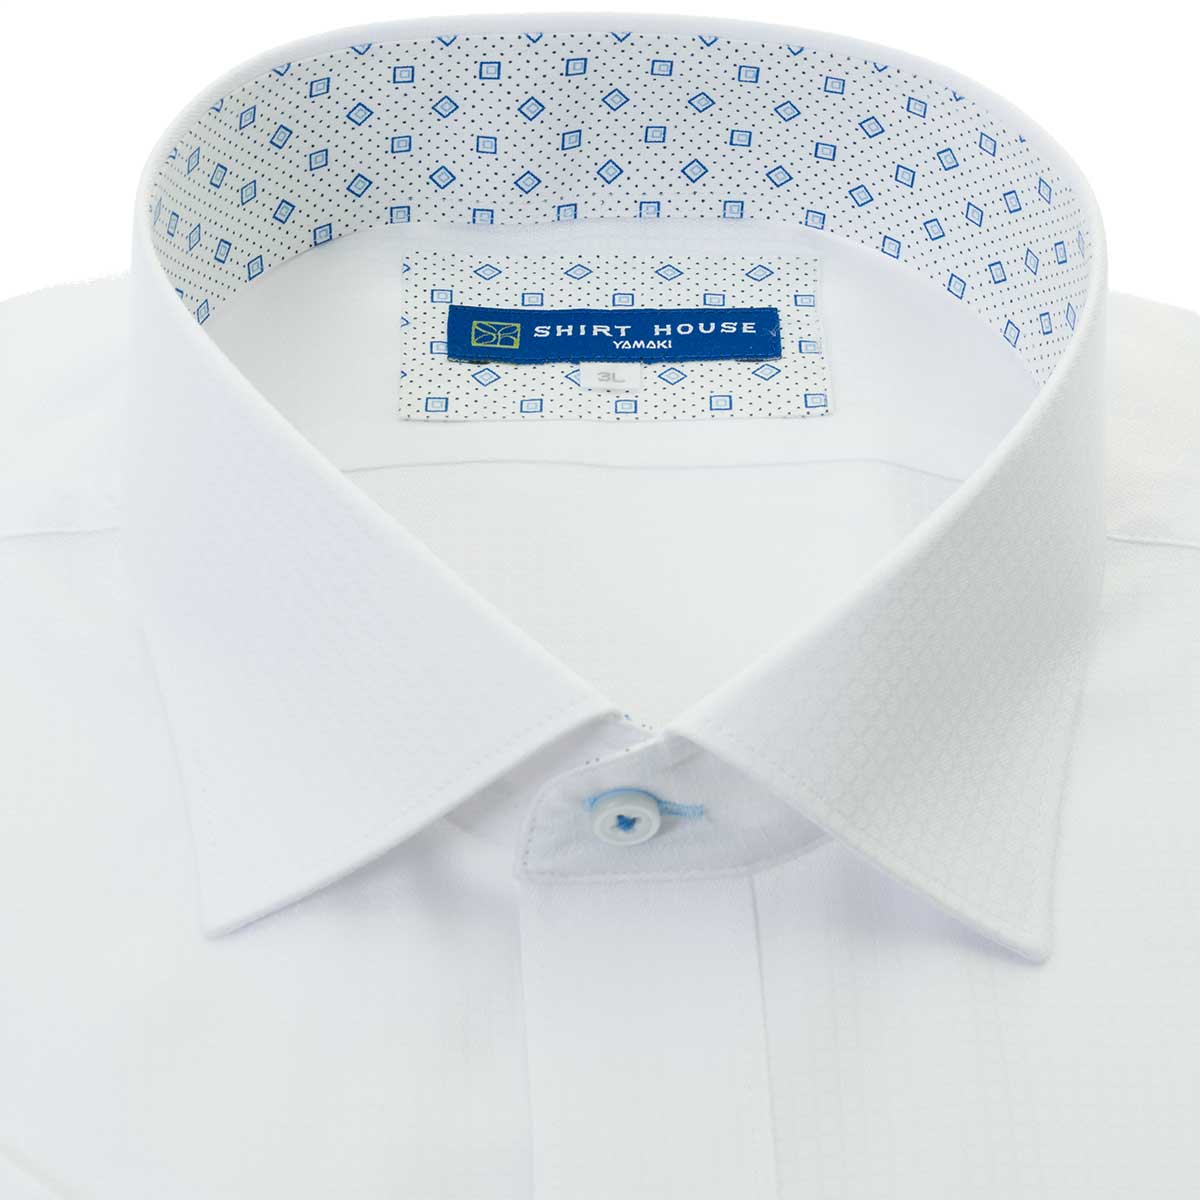 SHIRT HOUSE・ブルーレーベル 半袖 ワイドカラー ホワイト ワイシャツ